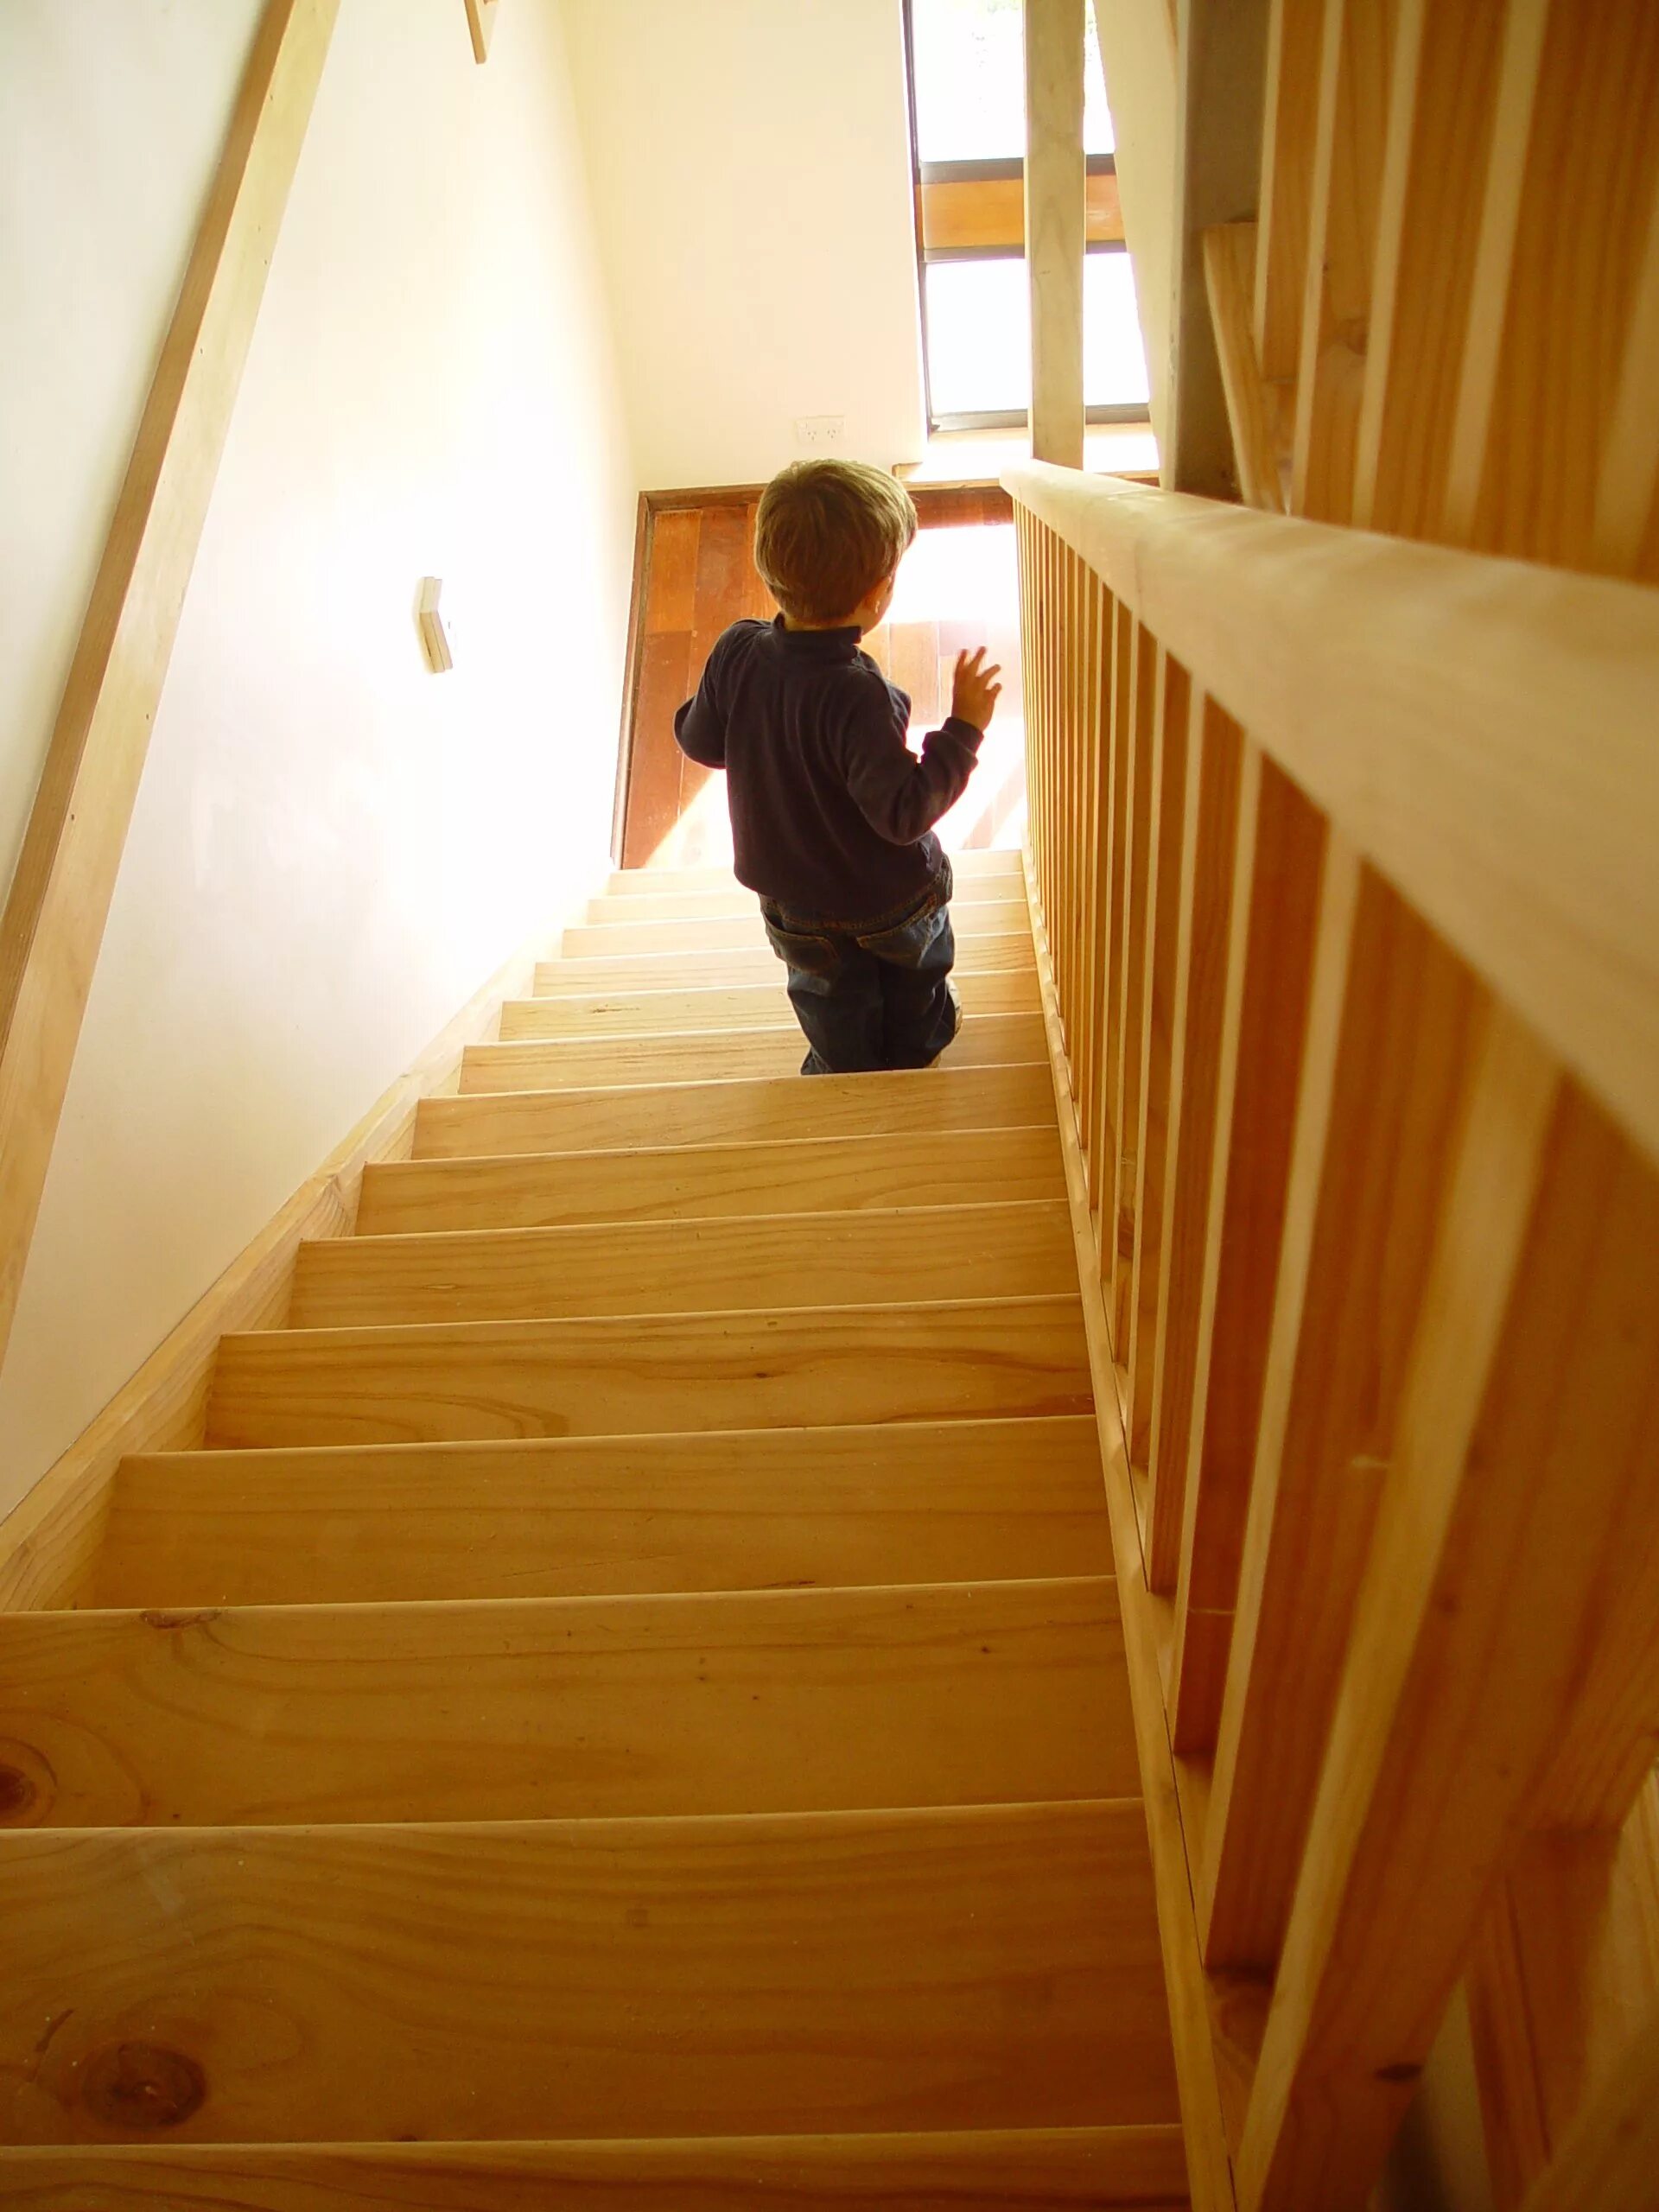 Поднявшись первым по лестнице. Лестница для детей. Лестница деревянная детская. Фотосессия на лестнице в доме. Дошкольник на лестнице.